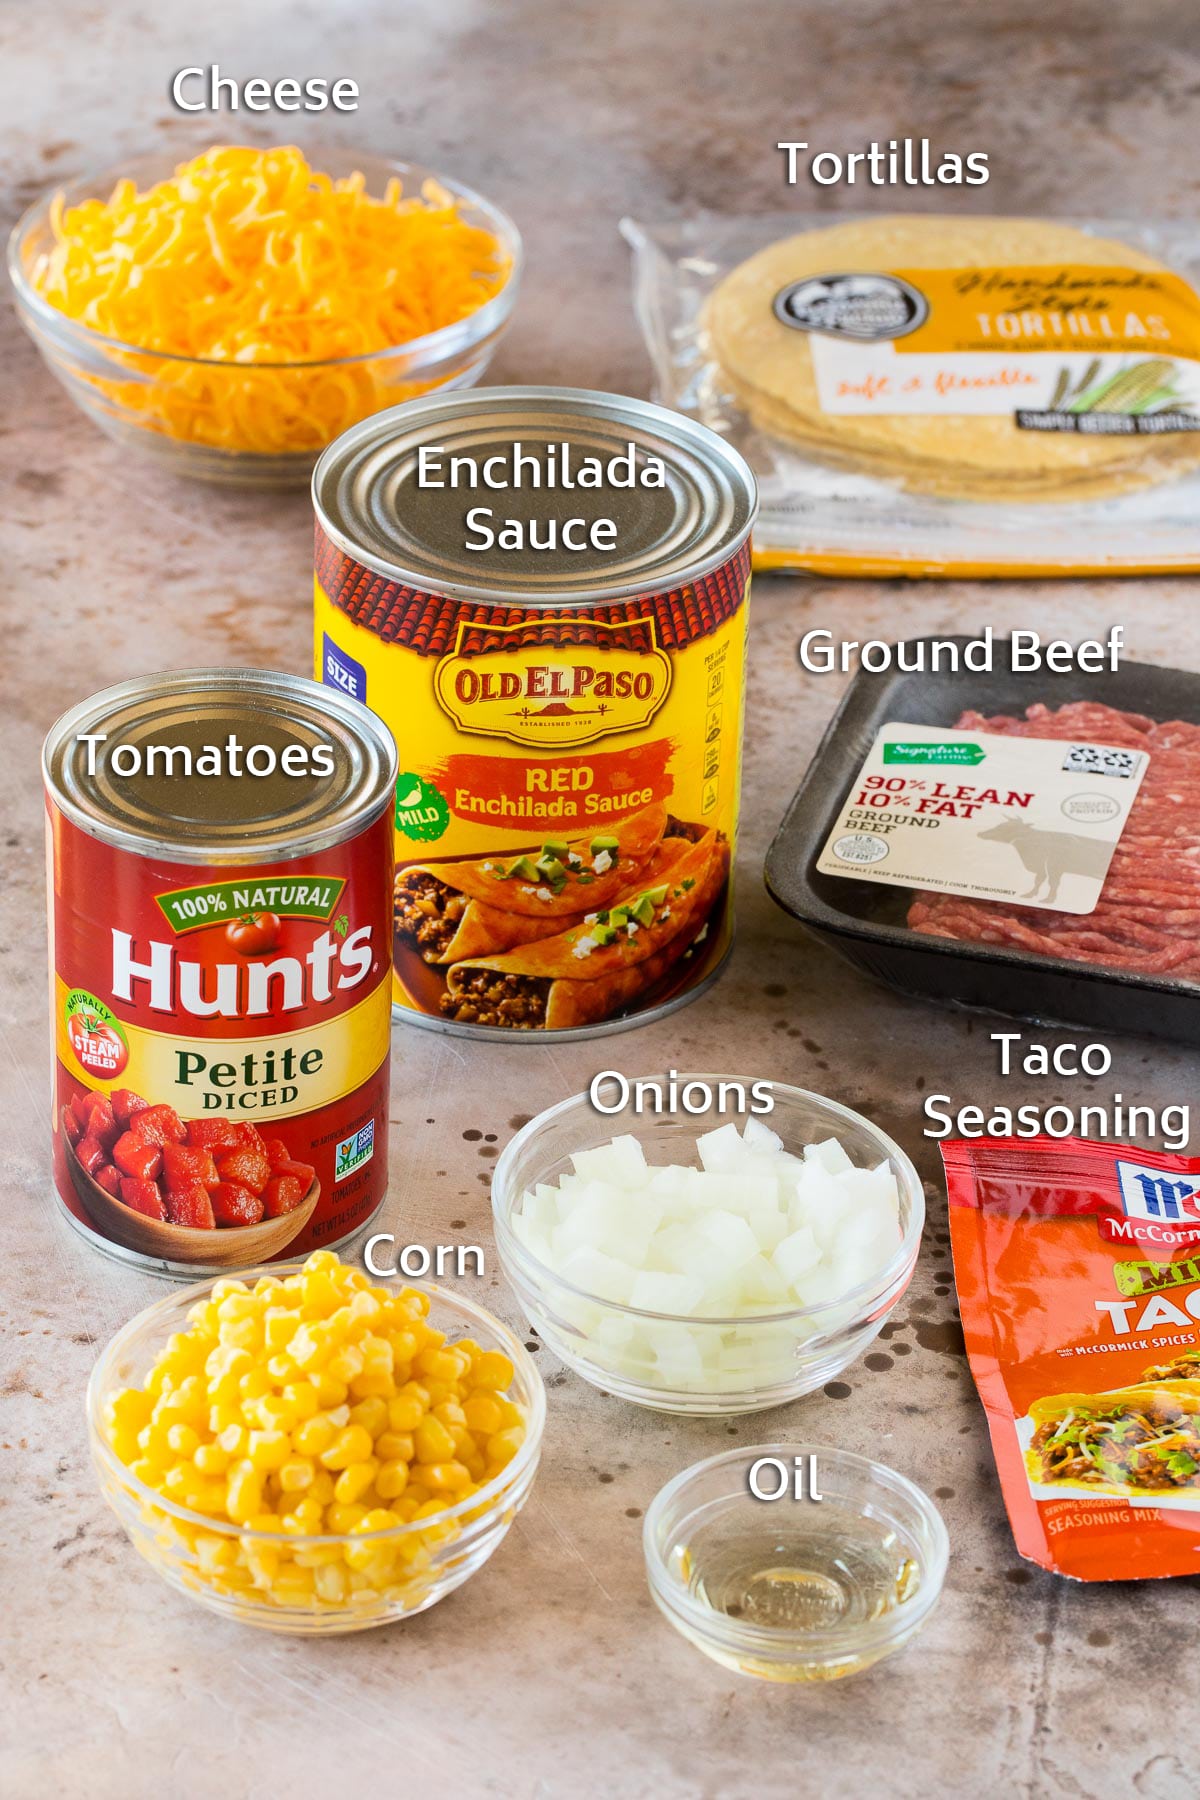 Ingredients including ground beef, tortillas, vegetables and seasonings.